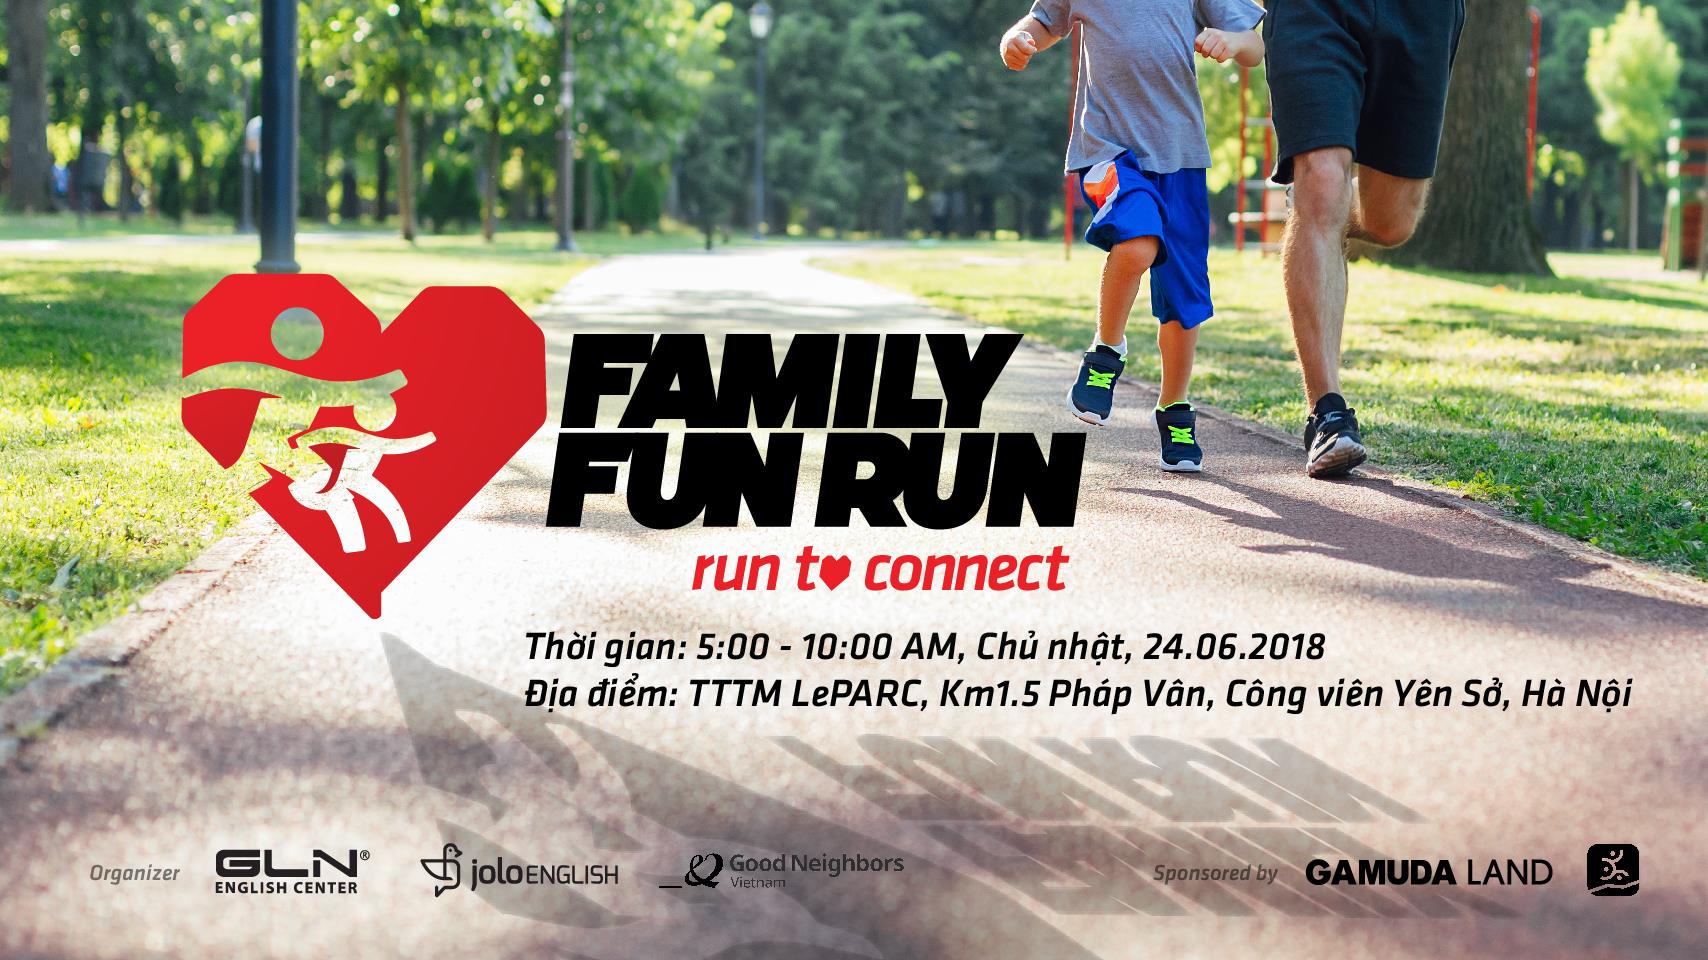 Family Fun Run 2018 - Run to connect - family fun run 2018